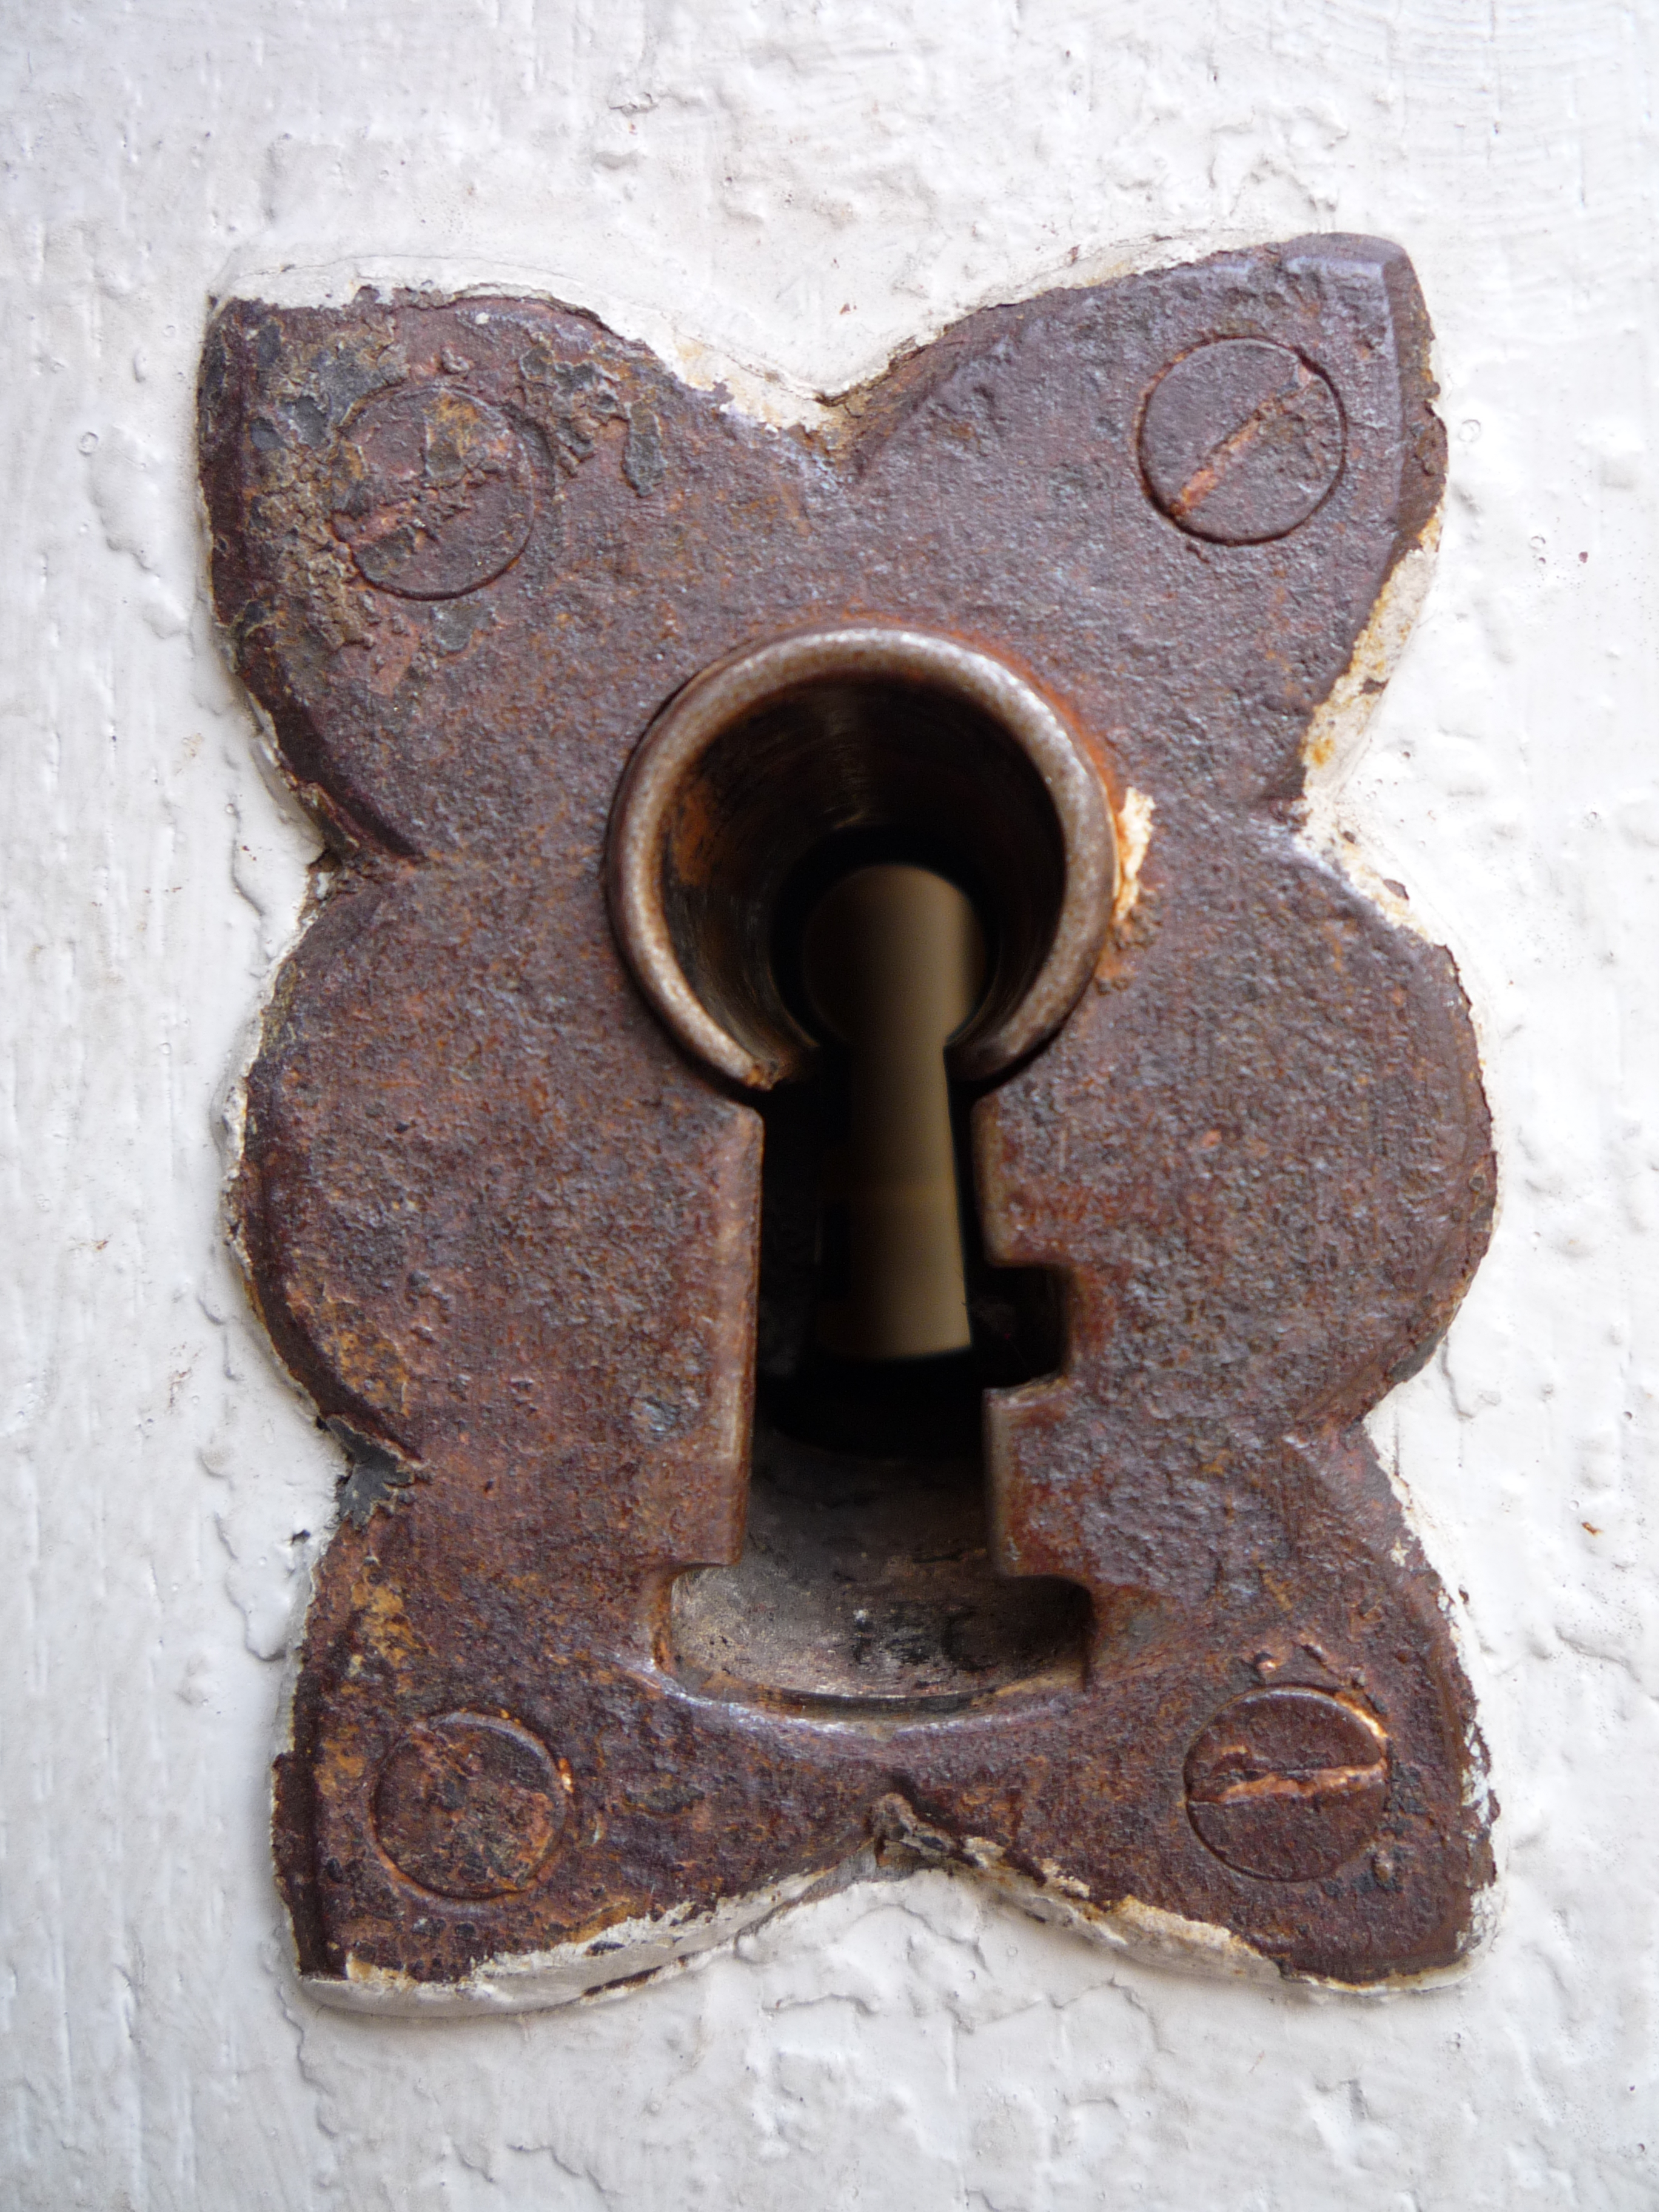 File:Rusty lock in Dijon.jpg - Wikimedia Commons